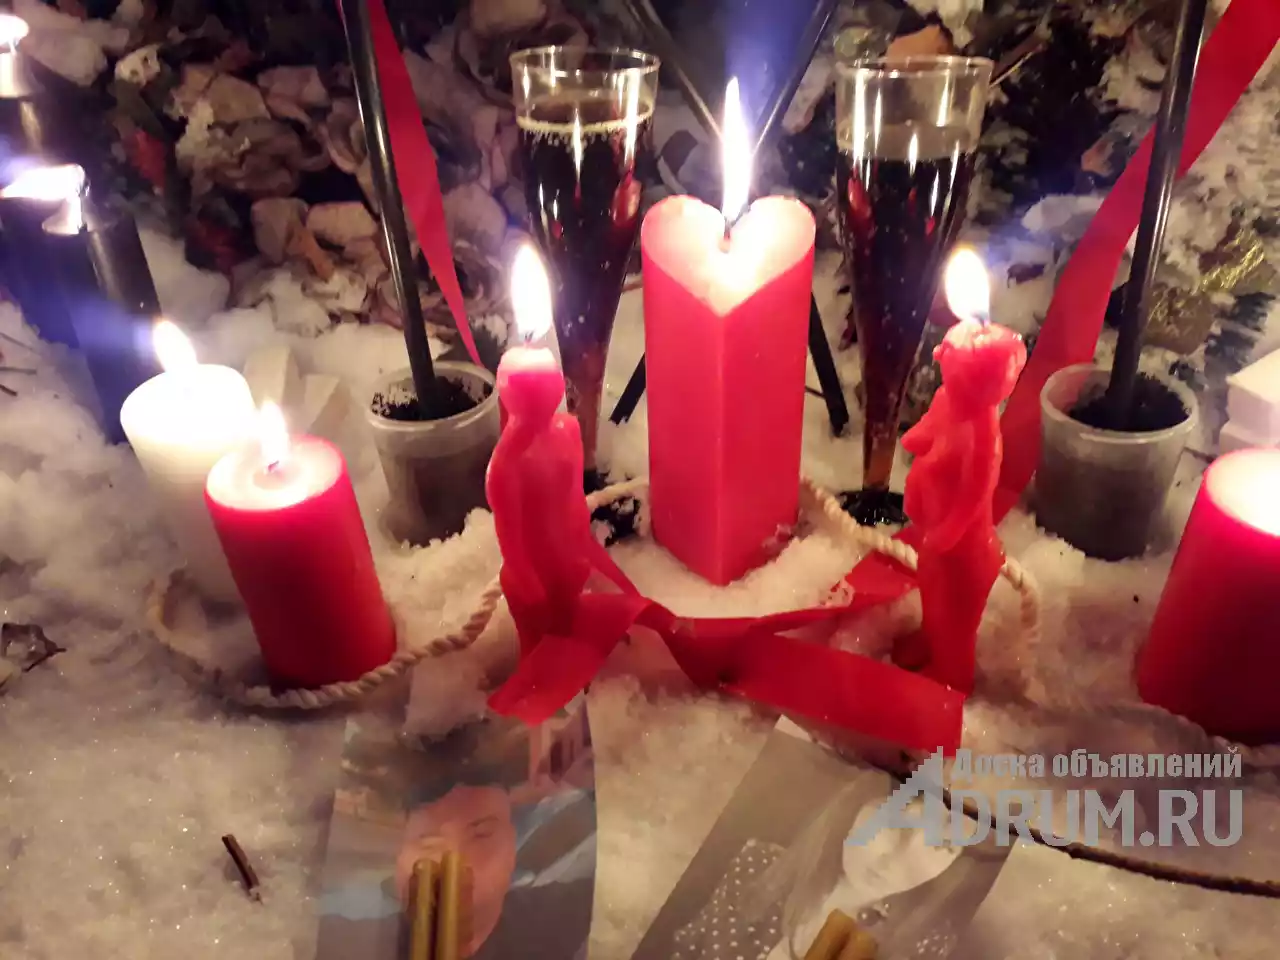 Сексуальная привязка егельет Видео присутствие на ритуале в Воронеж